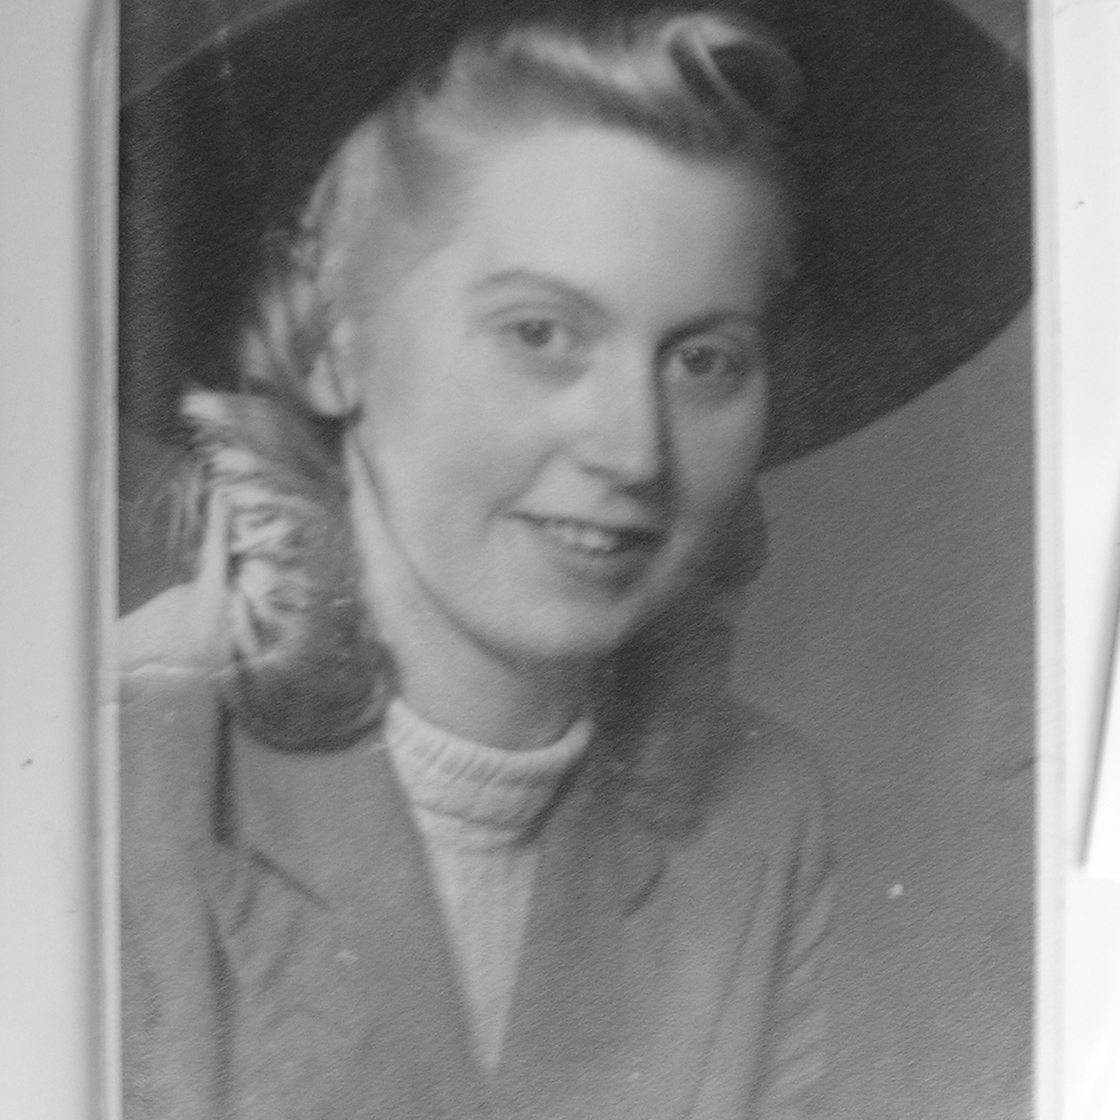 Ingeborg Ahner Siesen portraitiert in den 1940er Jahren im hellen Kostüm mit offenem Haar und dunklem Hut